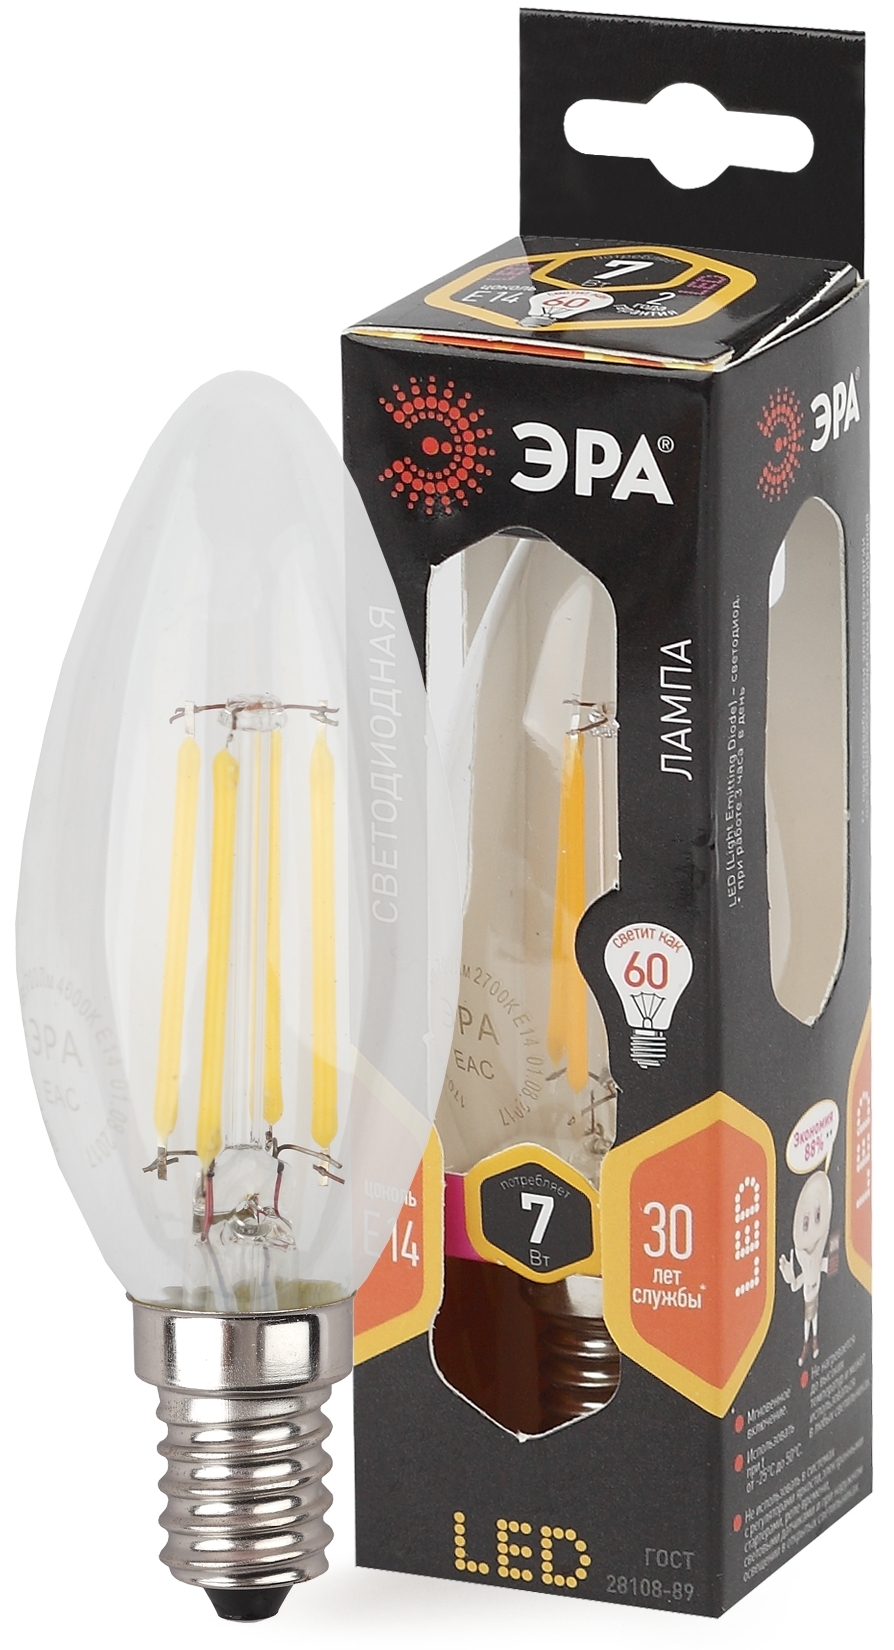 ЭРА F-LED B35-7W-827-E14 (филамент, свеча, 7Вт, тепл, E14)